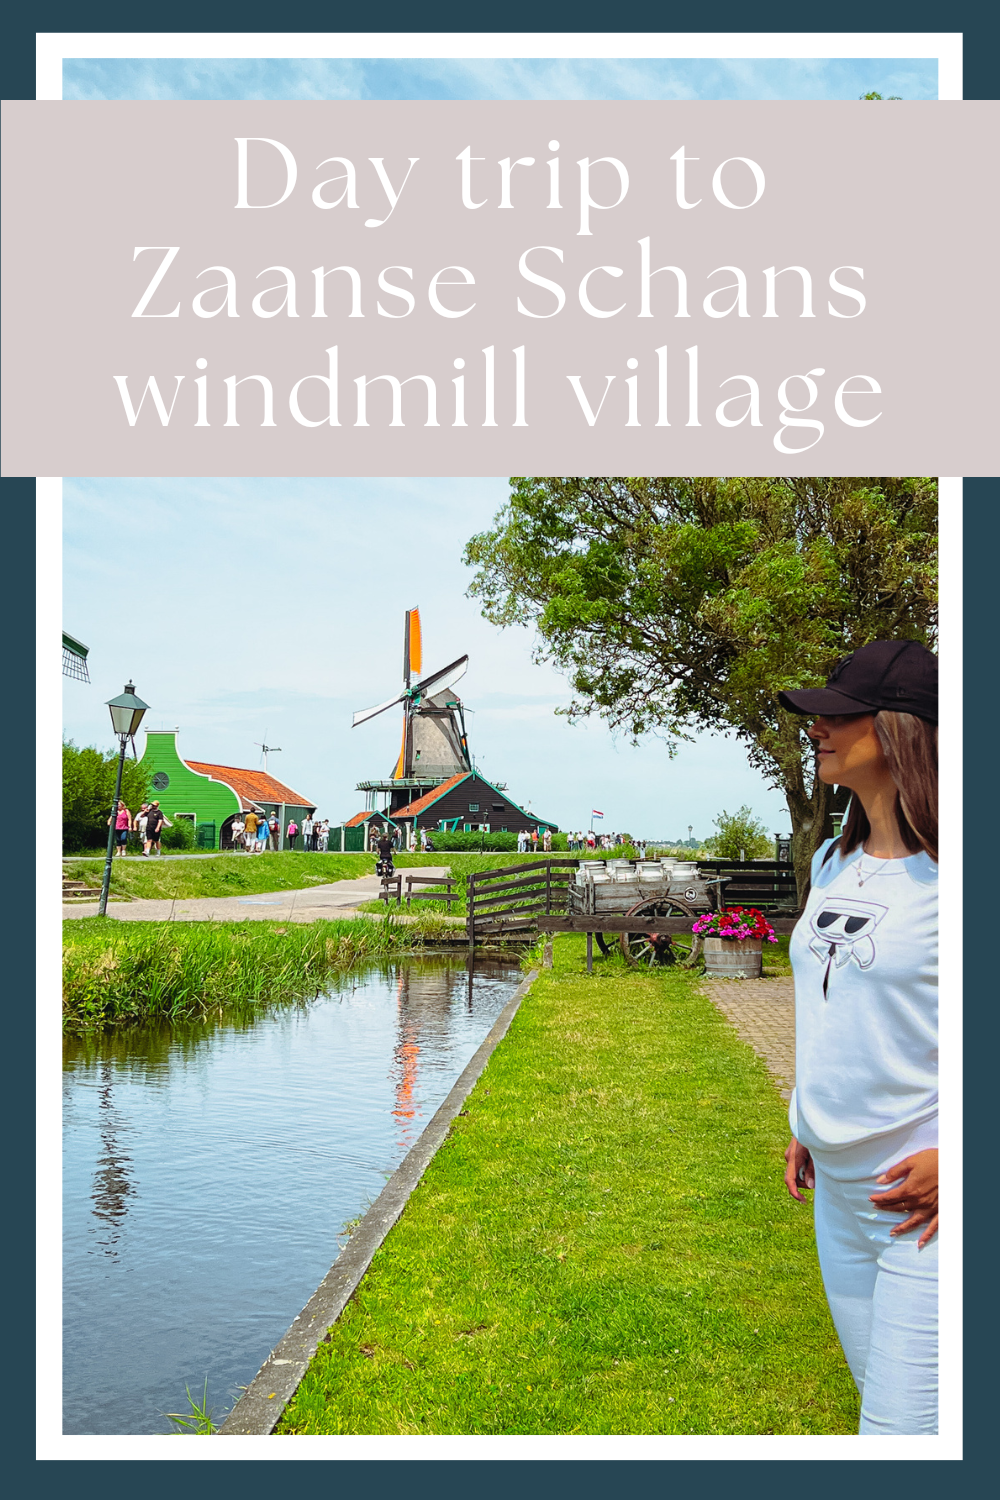 Zaanse schans windmill village